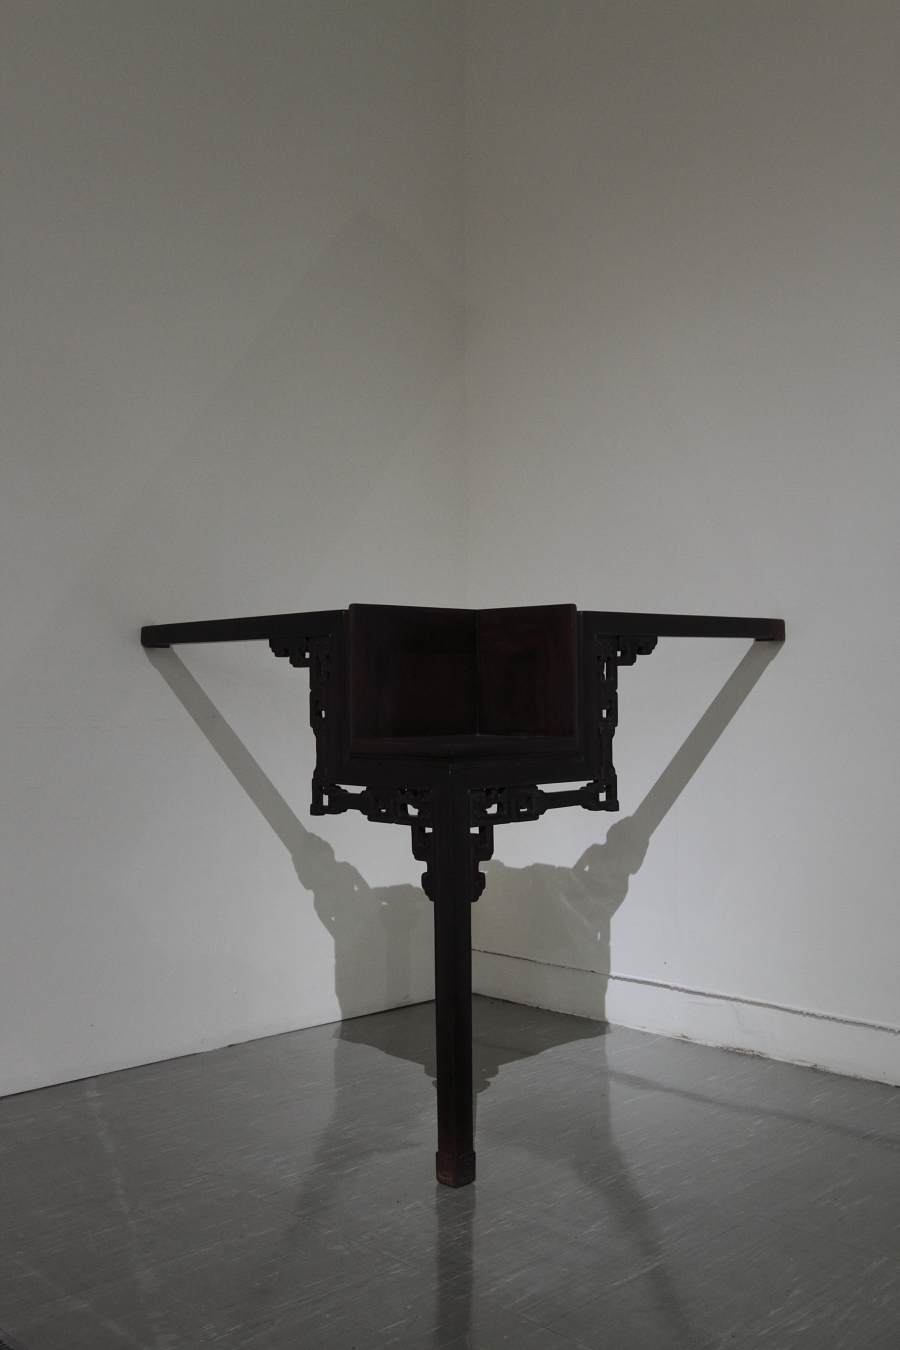 清朝桌子(1644-1911)  | 三條腿的桌子   164 x 193 x 116 cm, 2010 的圖說